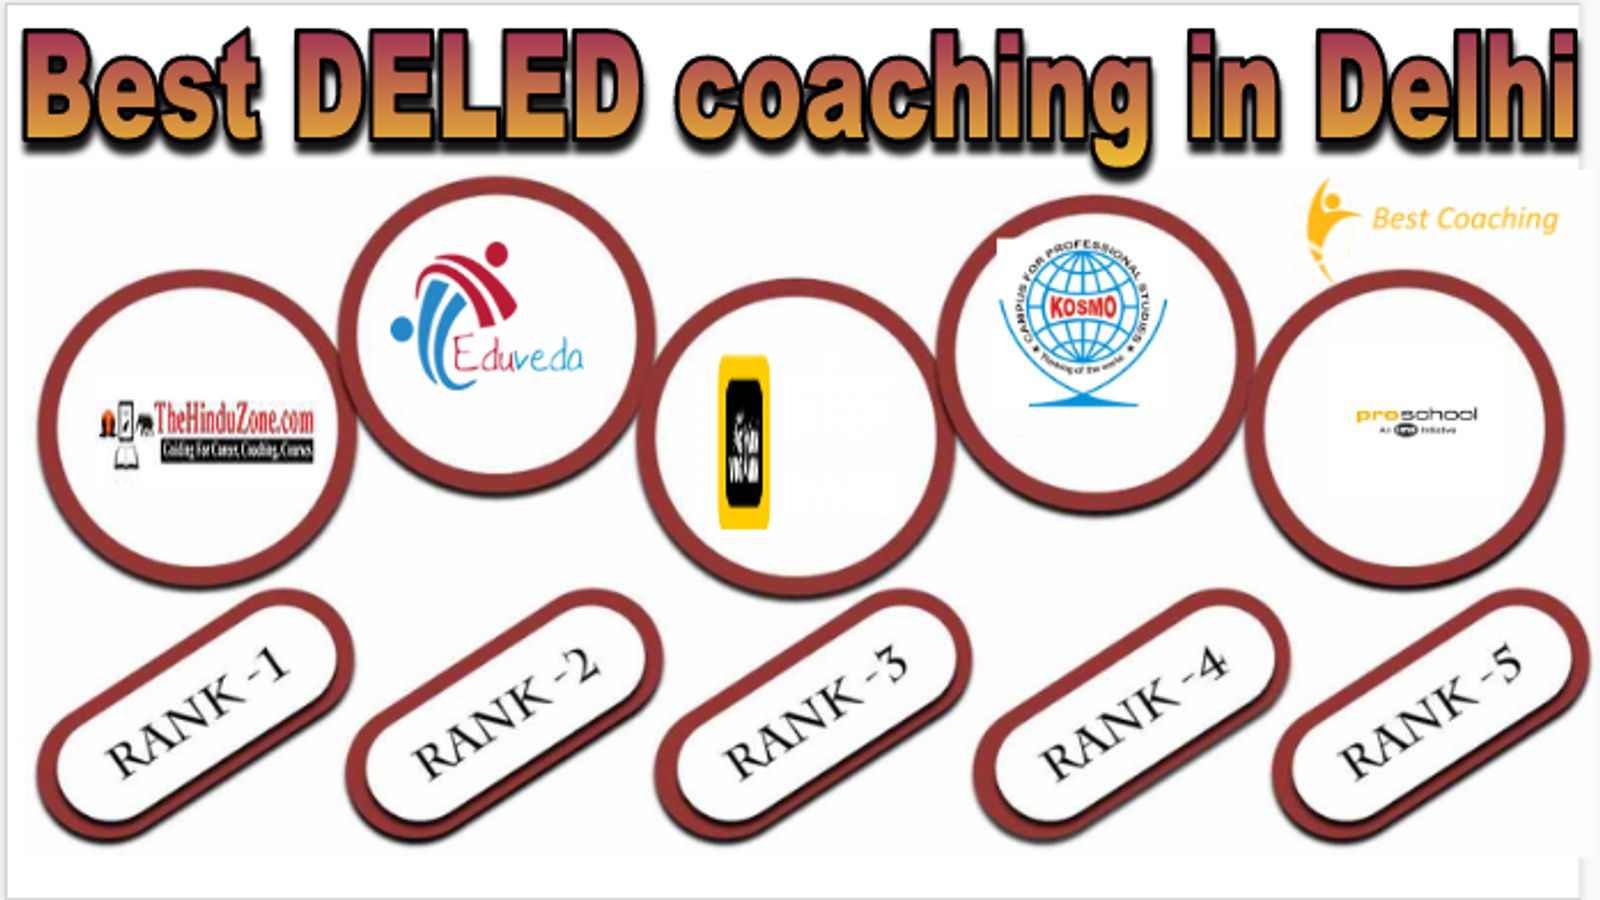 Best DELED coaching in Delhi